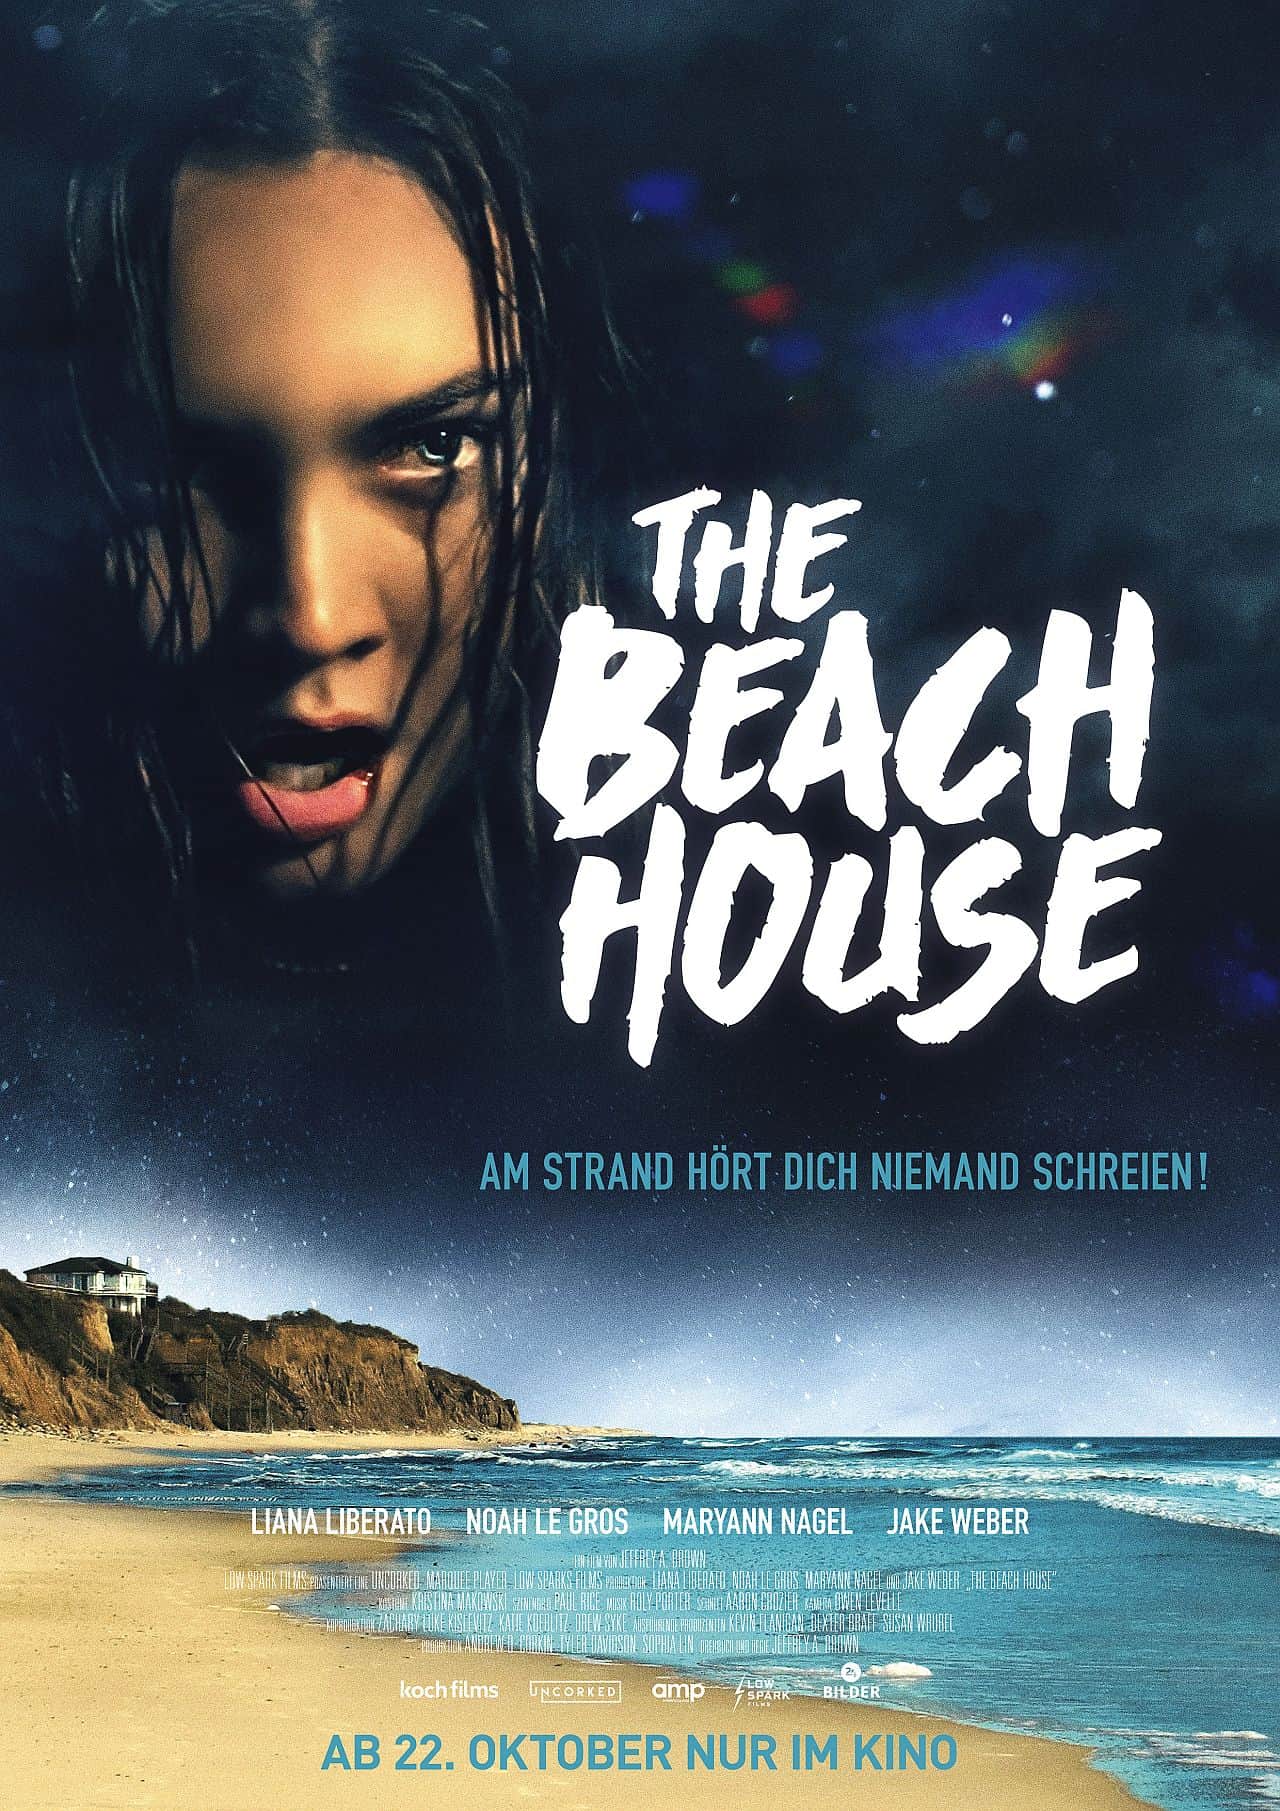 The Beach House startet am 22. Oktober im Kino als Creature Shocker.